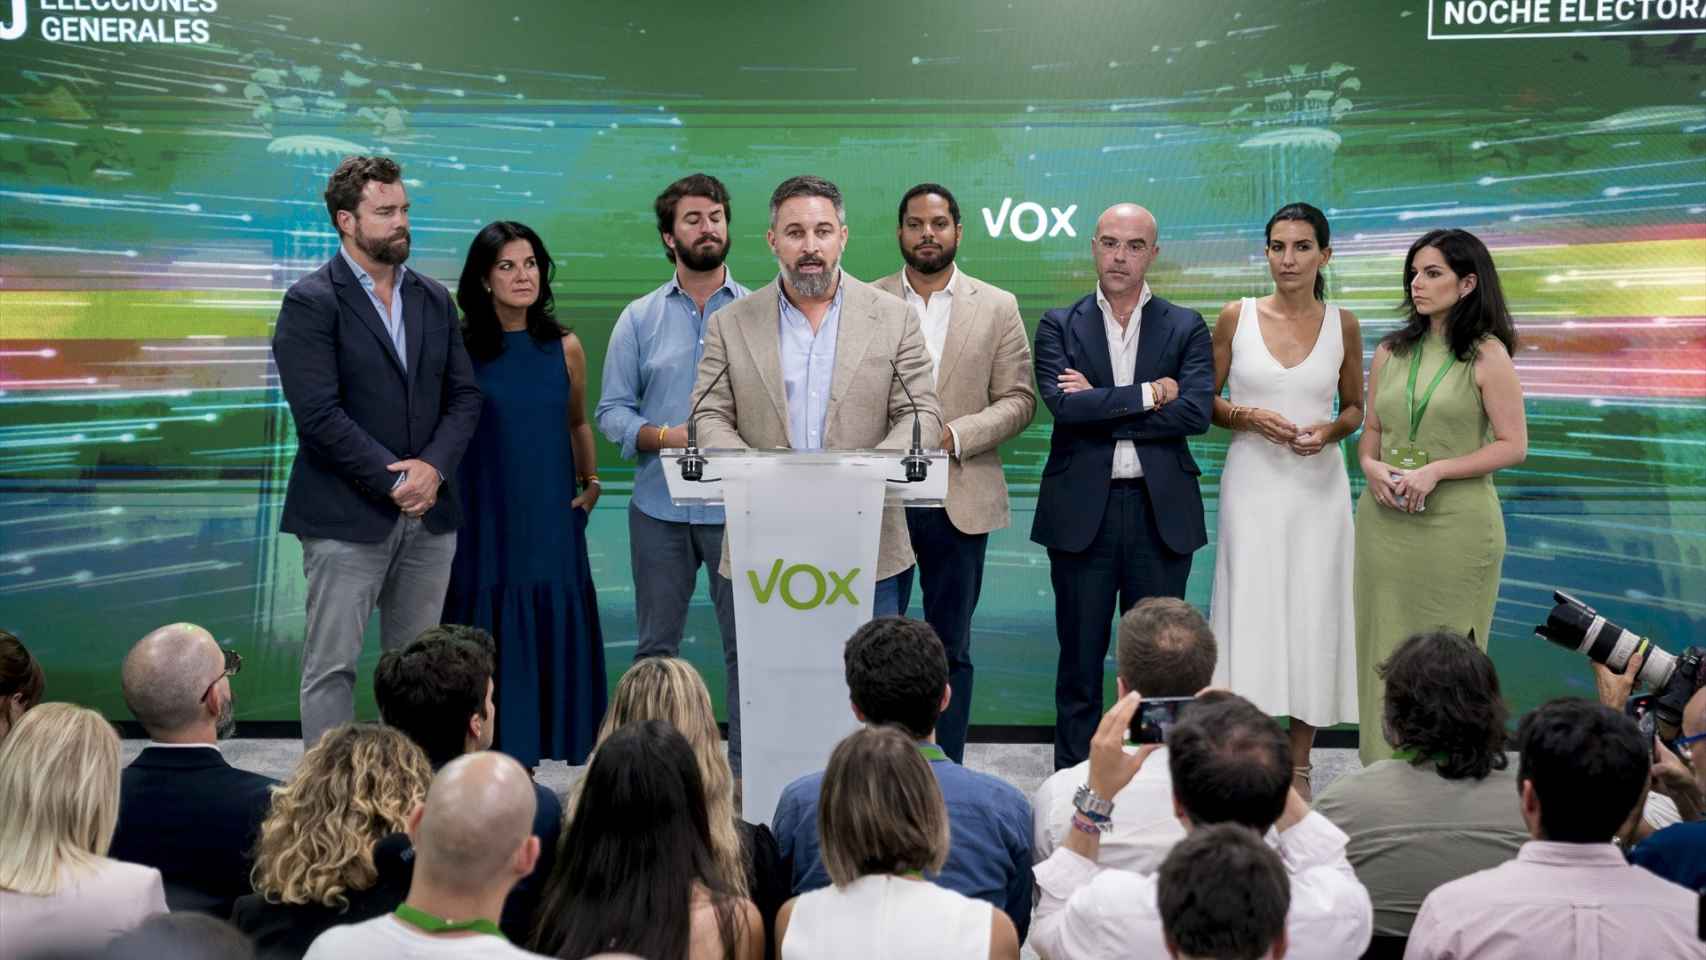 Comunicado de la dirección de Vox tras el batacazo electoral del partido ultraderechista en los comicios electorales del 23 de julio